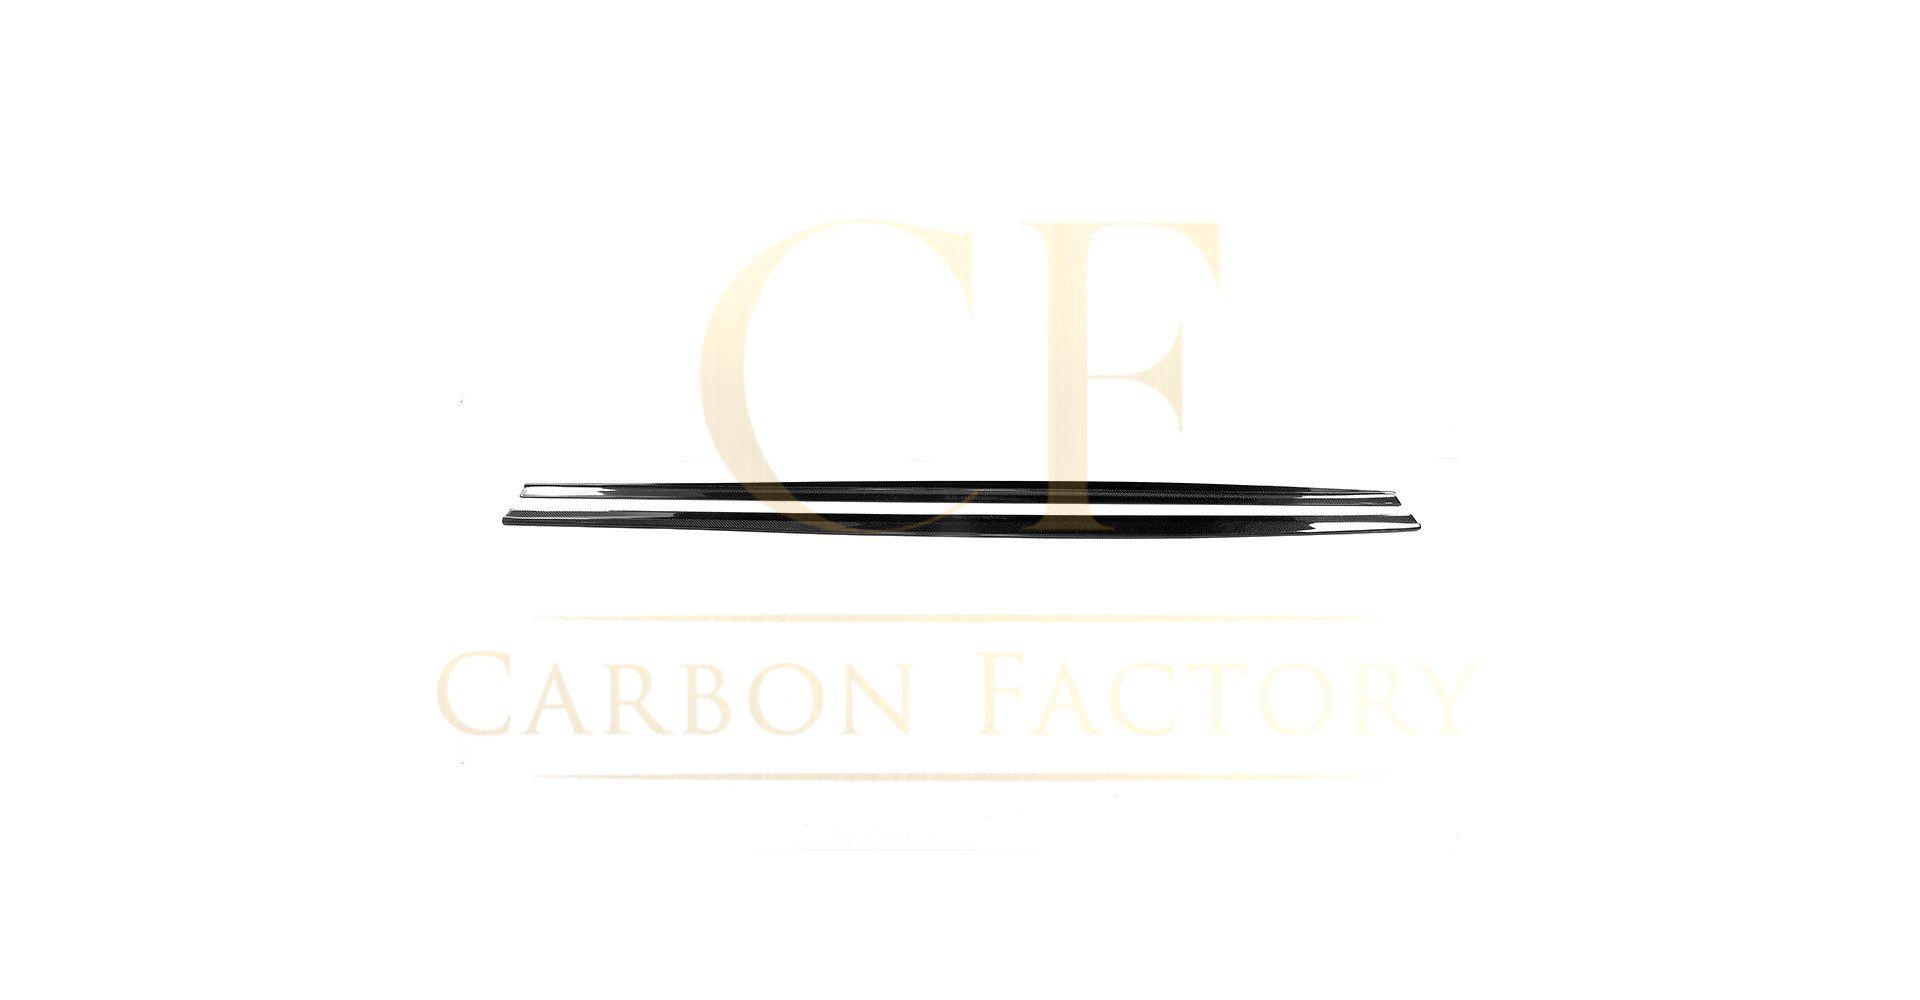 BMW G30 5 Series F90 M5 Carbon Fibre Side Skirt 17-23-Carbon Factory